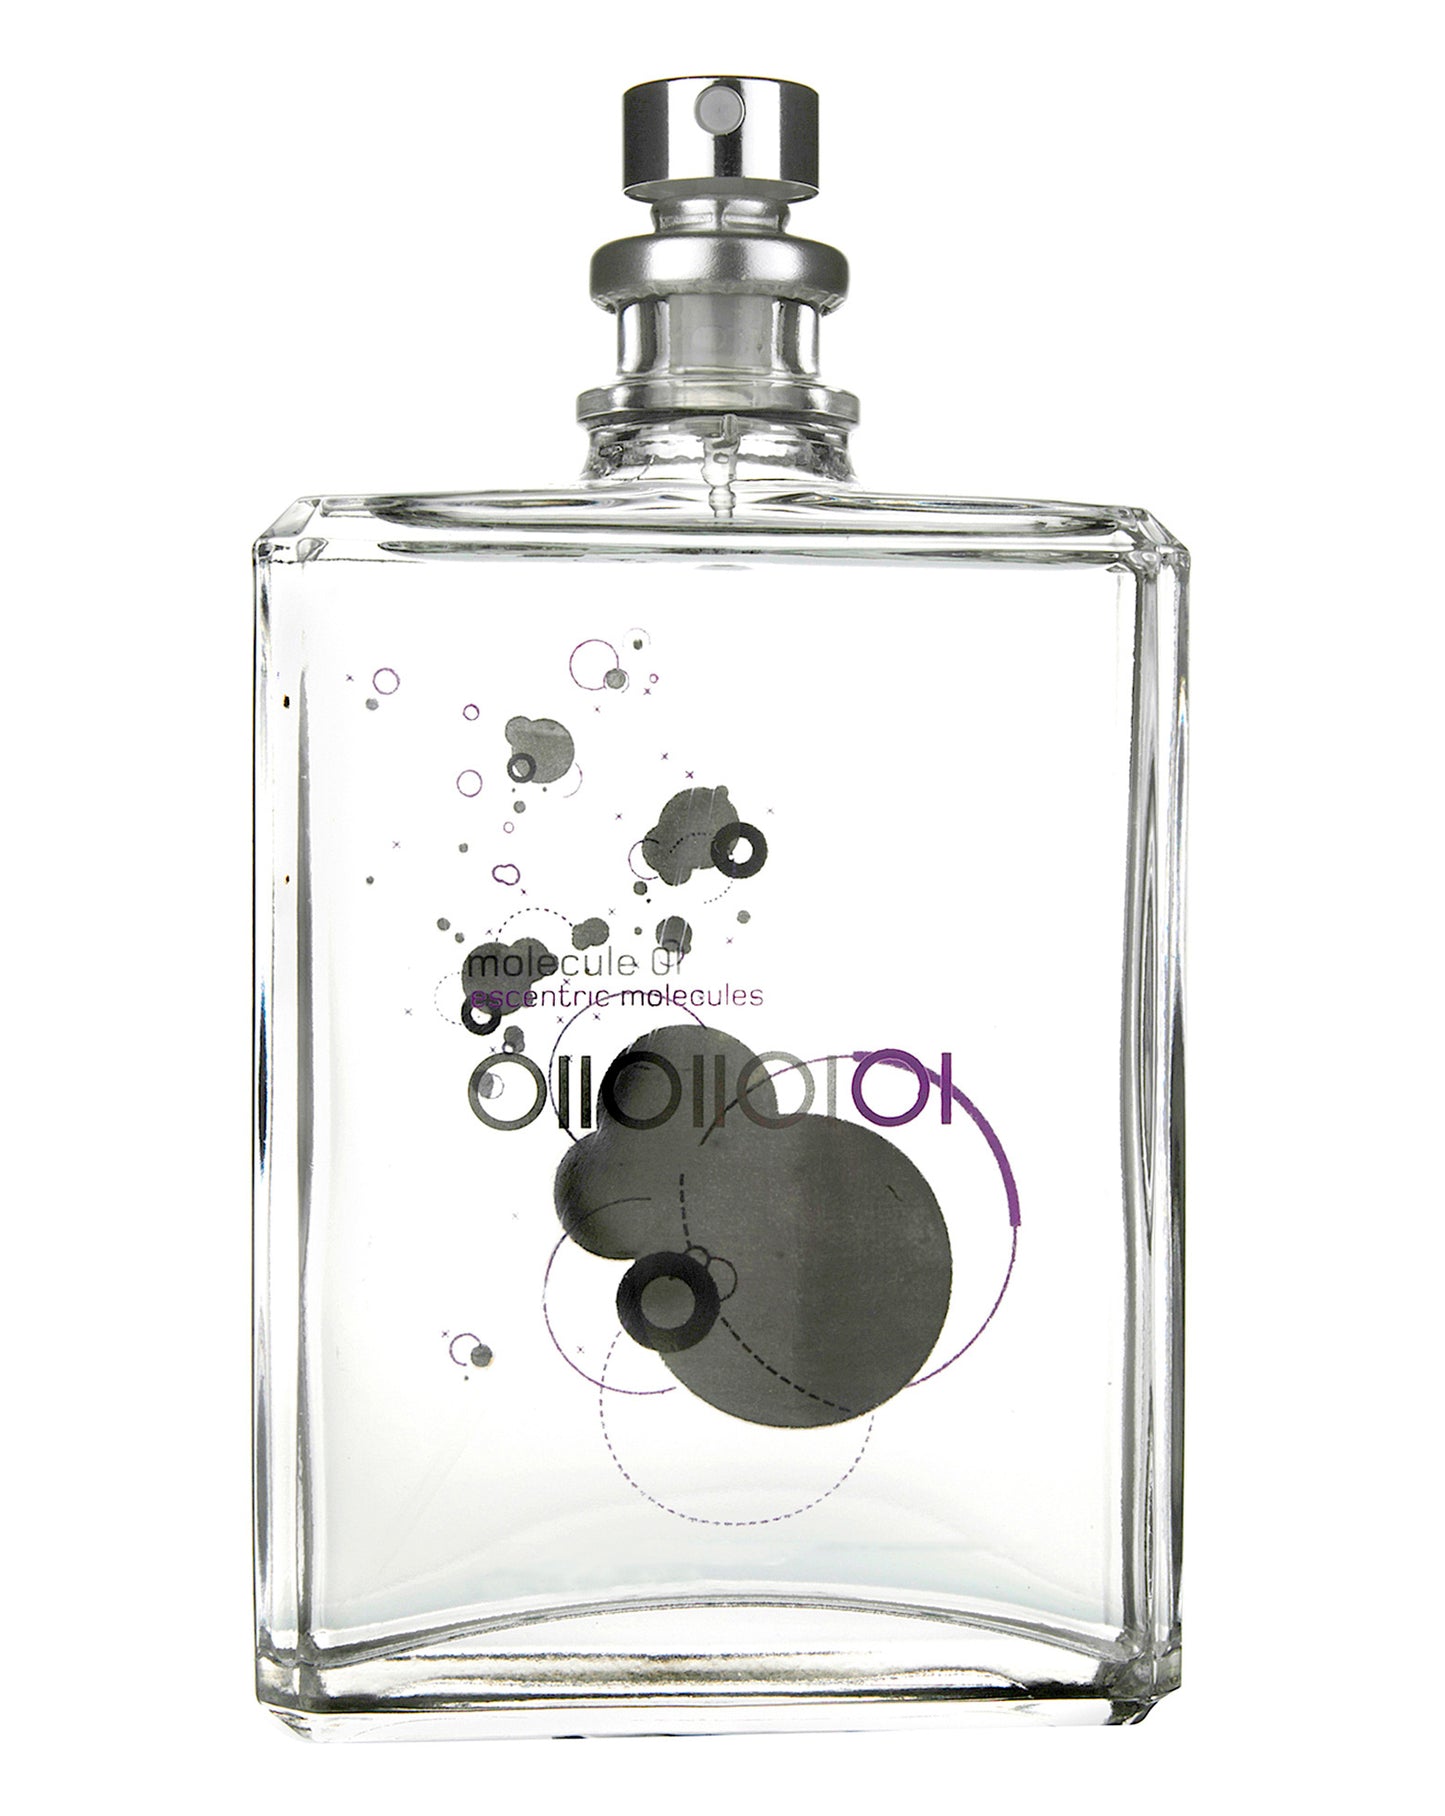 Molecule 01 Special Blend Luxury Perfume Oil